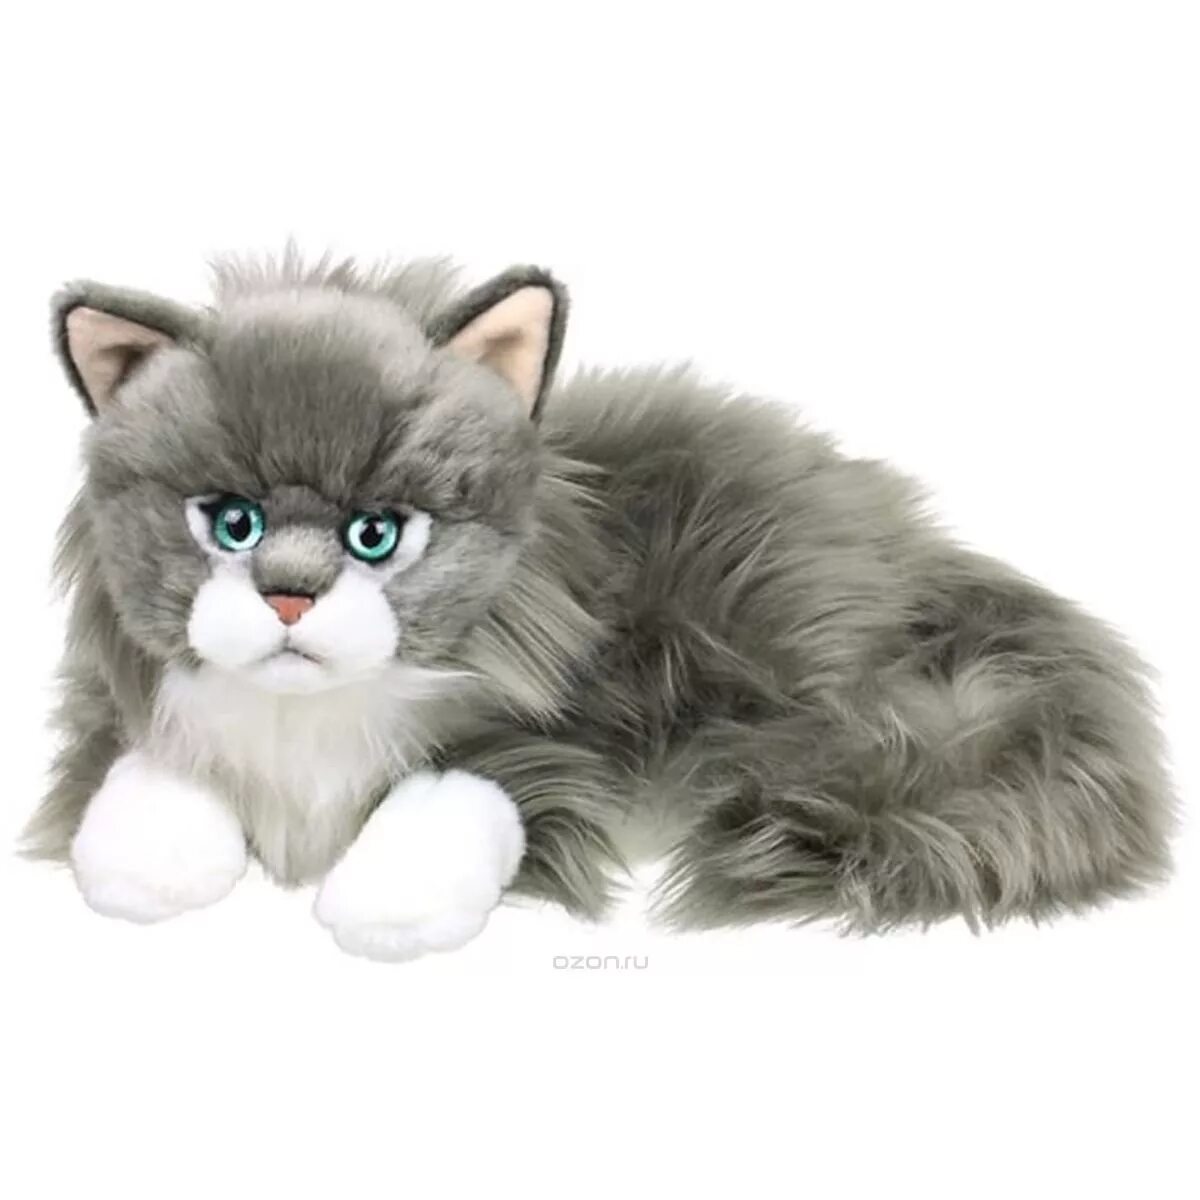 Серые кошки игрушки. Anna Club Plush игрушки кот. Anna Club Plush мягкая игрушка. Мягкая игрушка Hansa персидский кот табби серый с белым 38 см. Игрушка серый котенок.